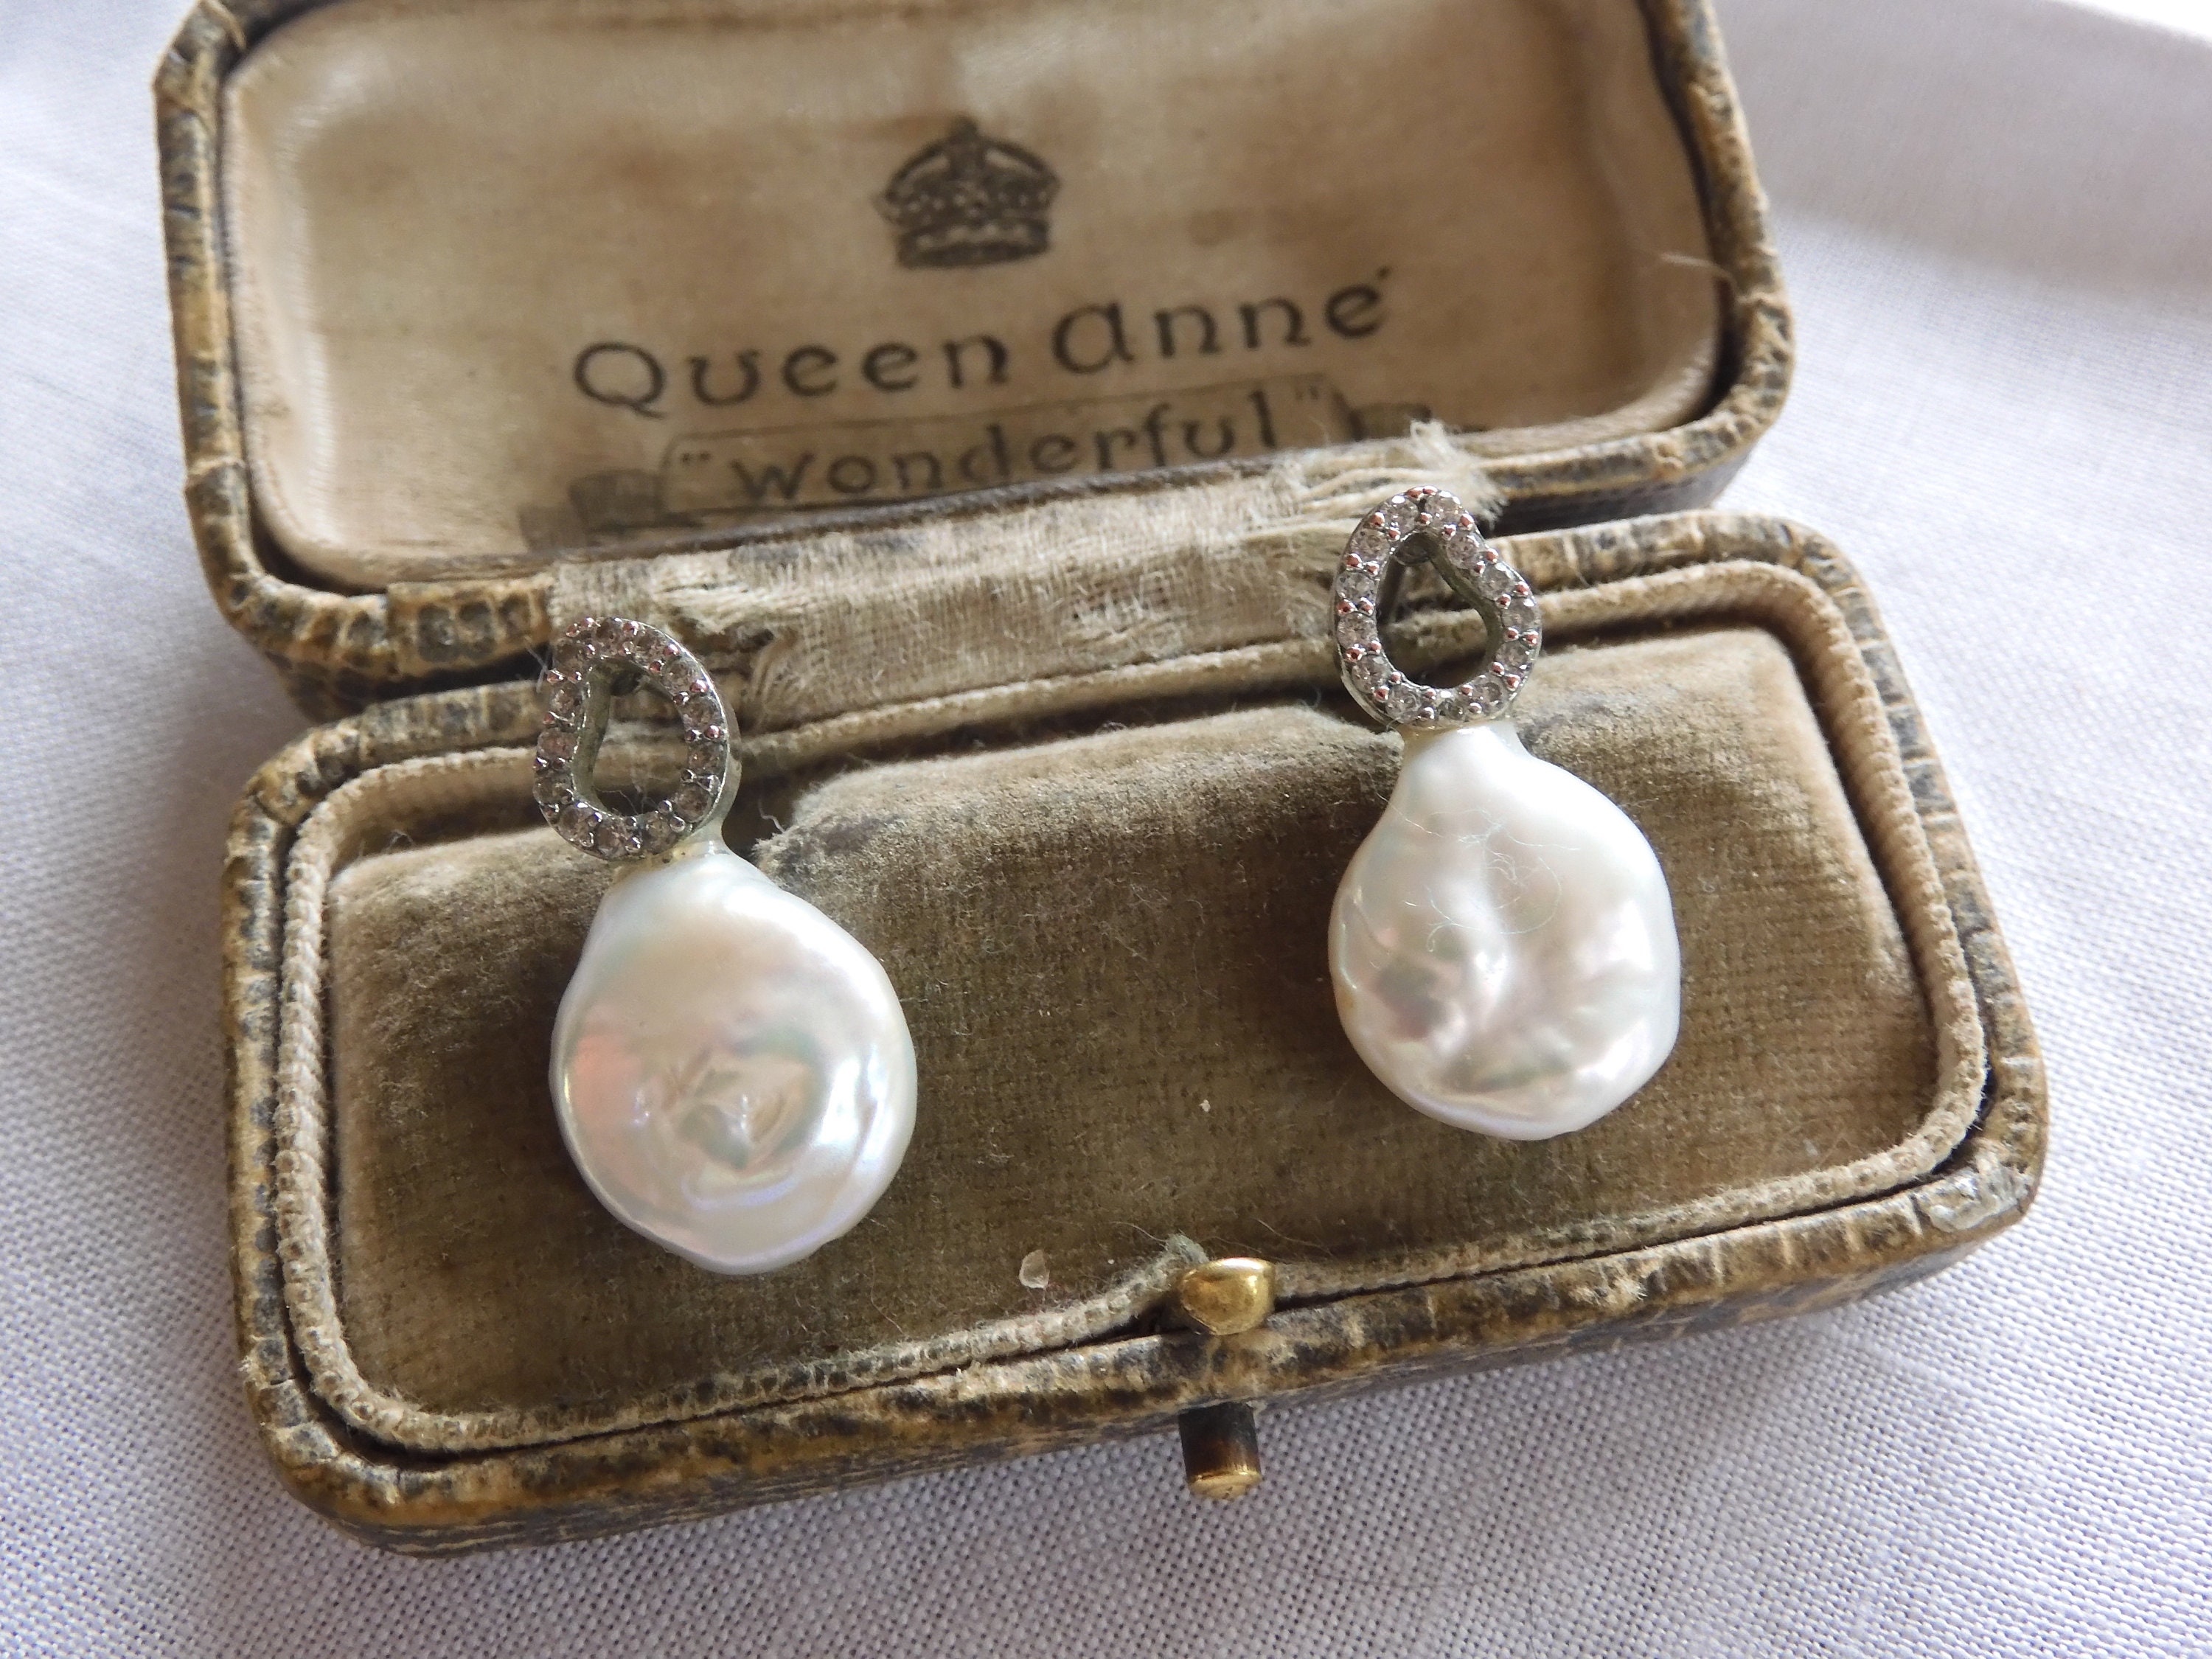 vintage chanel pearl brooch silver